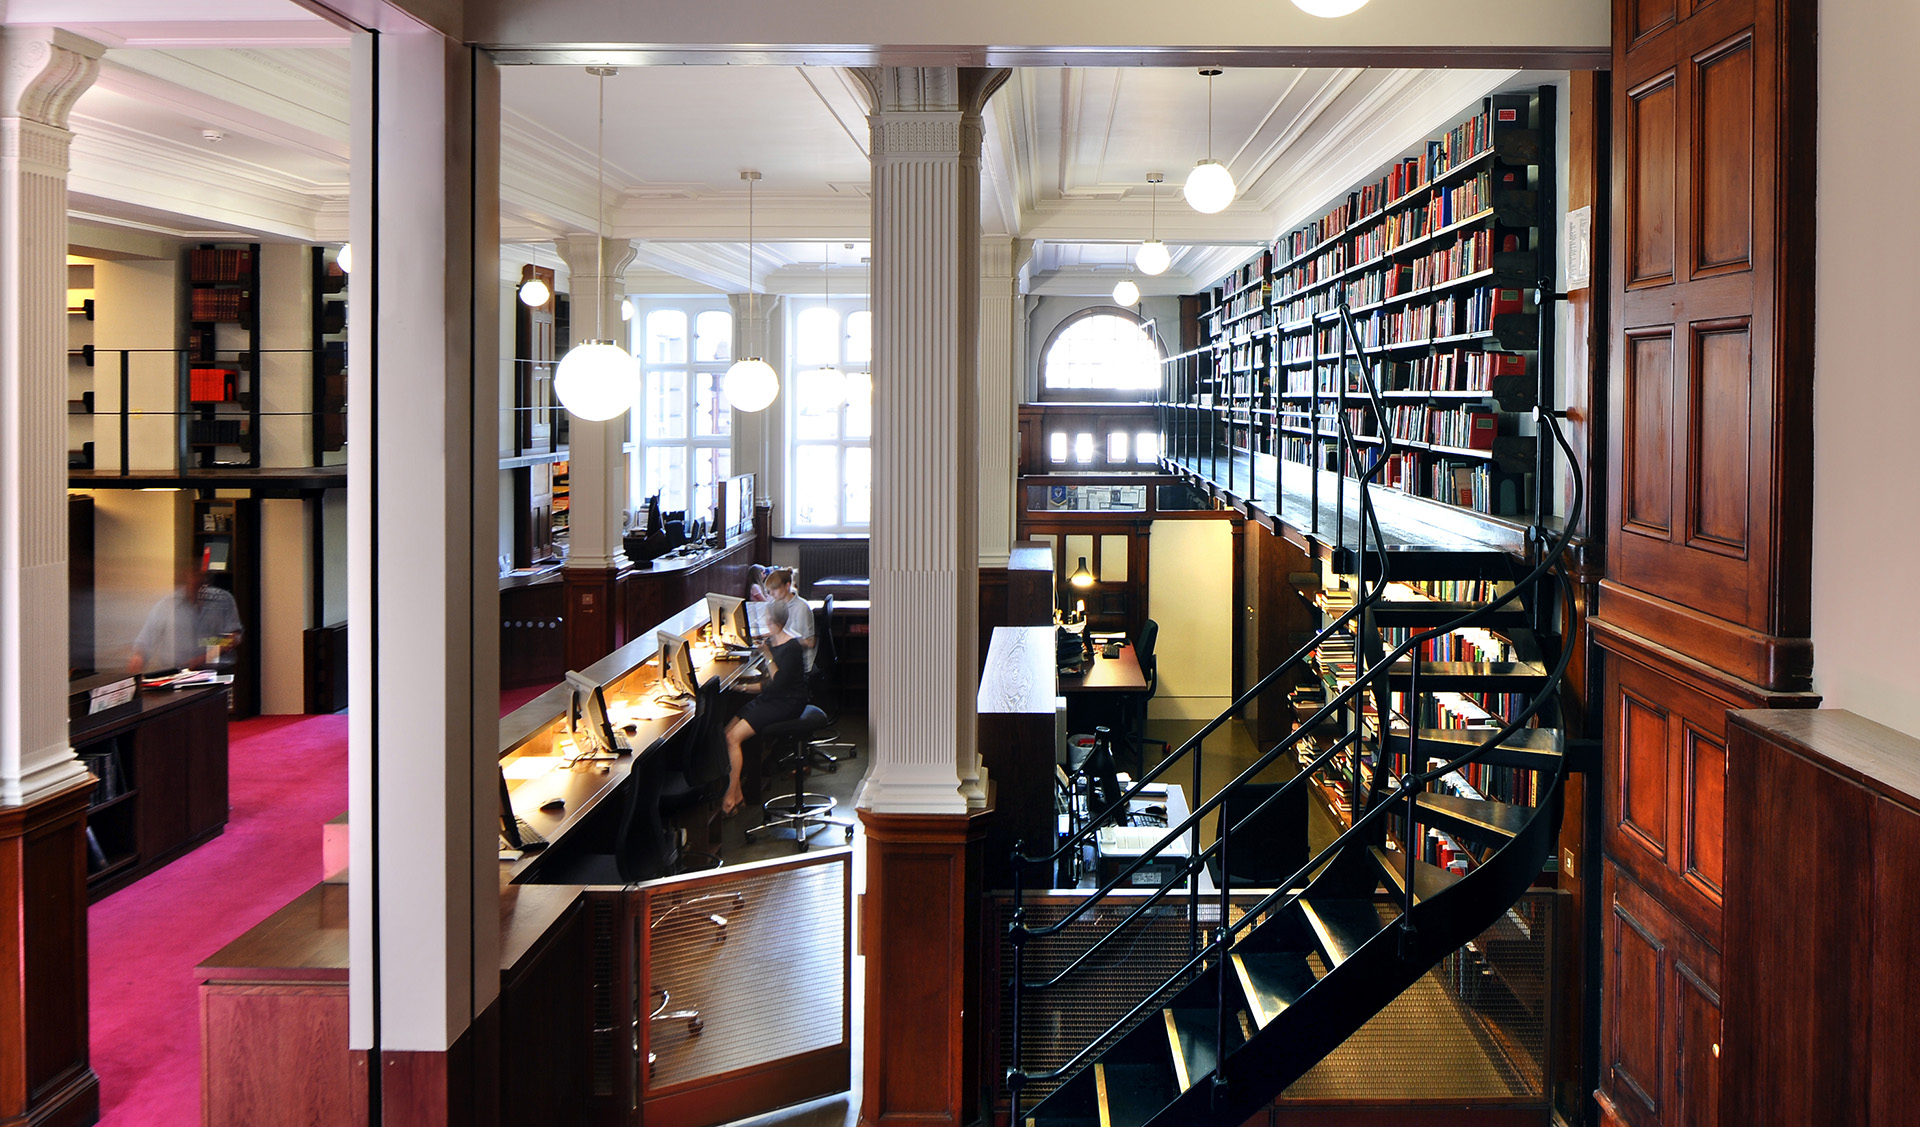 Библиотека 23 года. Библиотека в Лондоне. Библиотека британского музея в Лондоне. Библиотека музея Великобритании. Здание библиотеки Лондон.